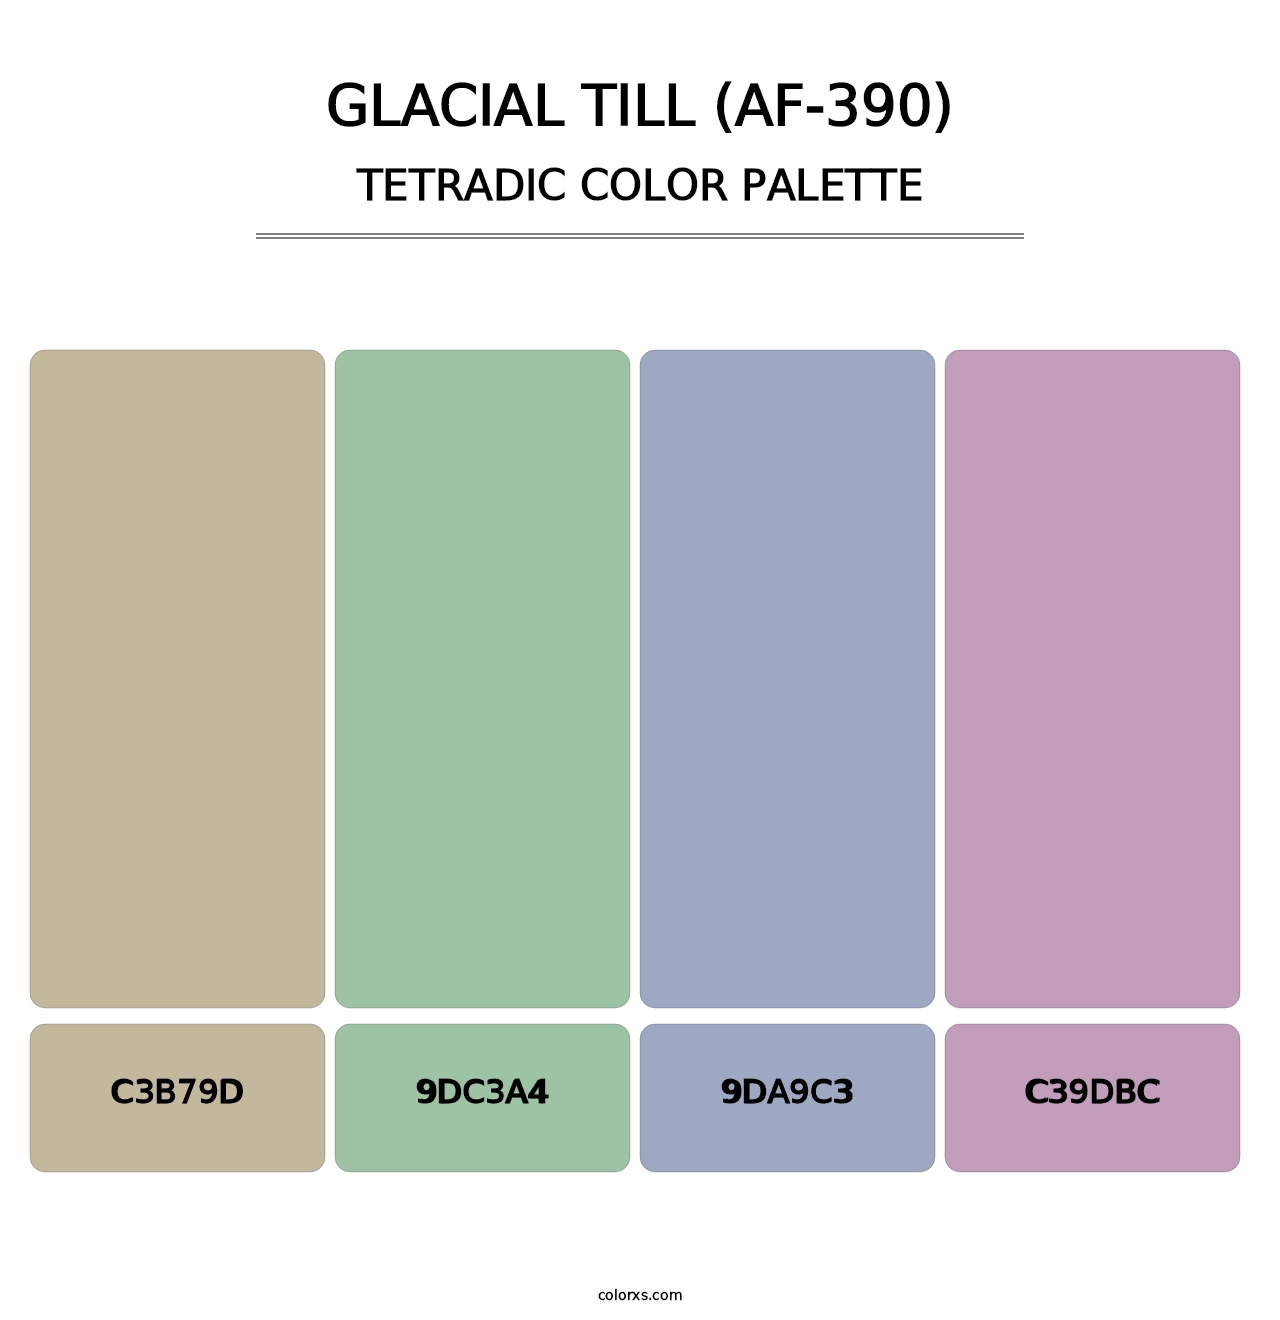 Glacial Till (AF-390) - Tetradic Color Palette